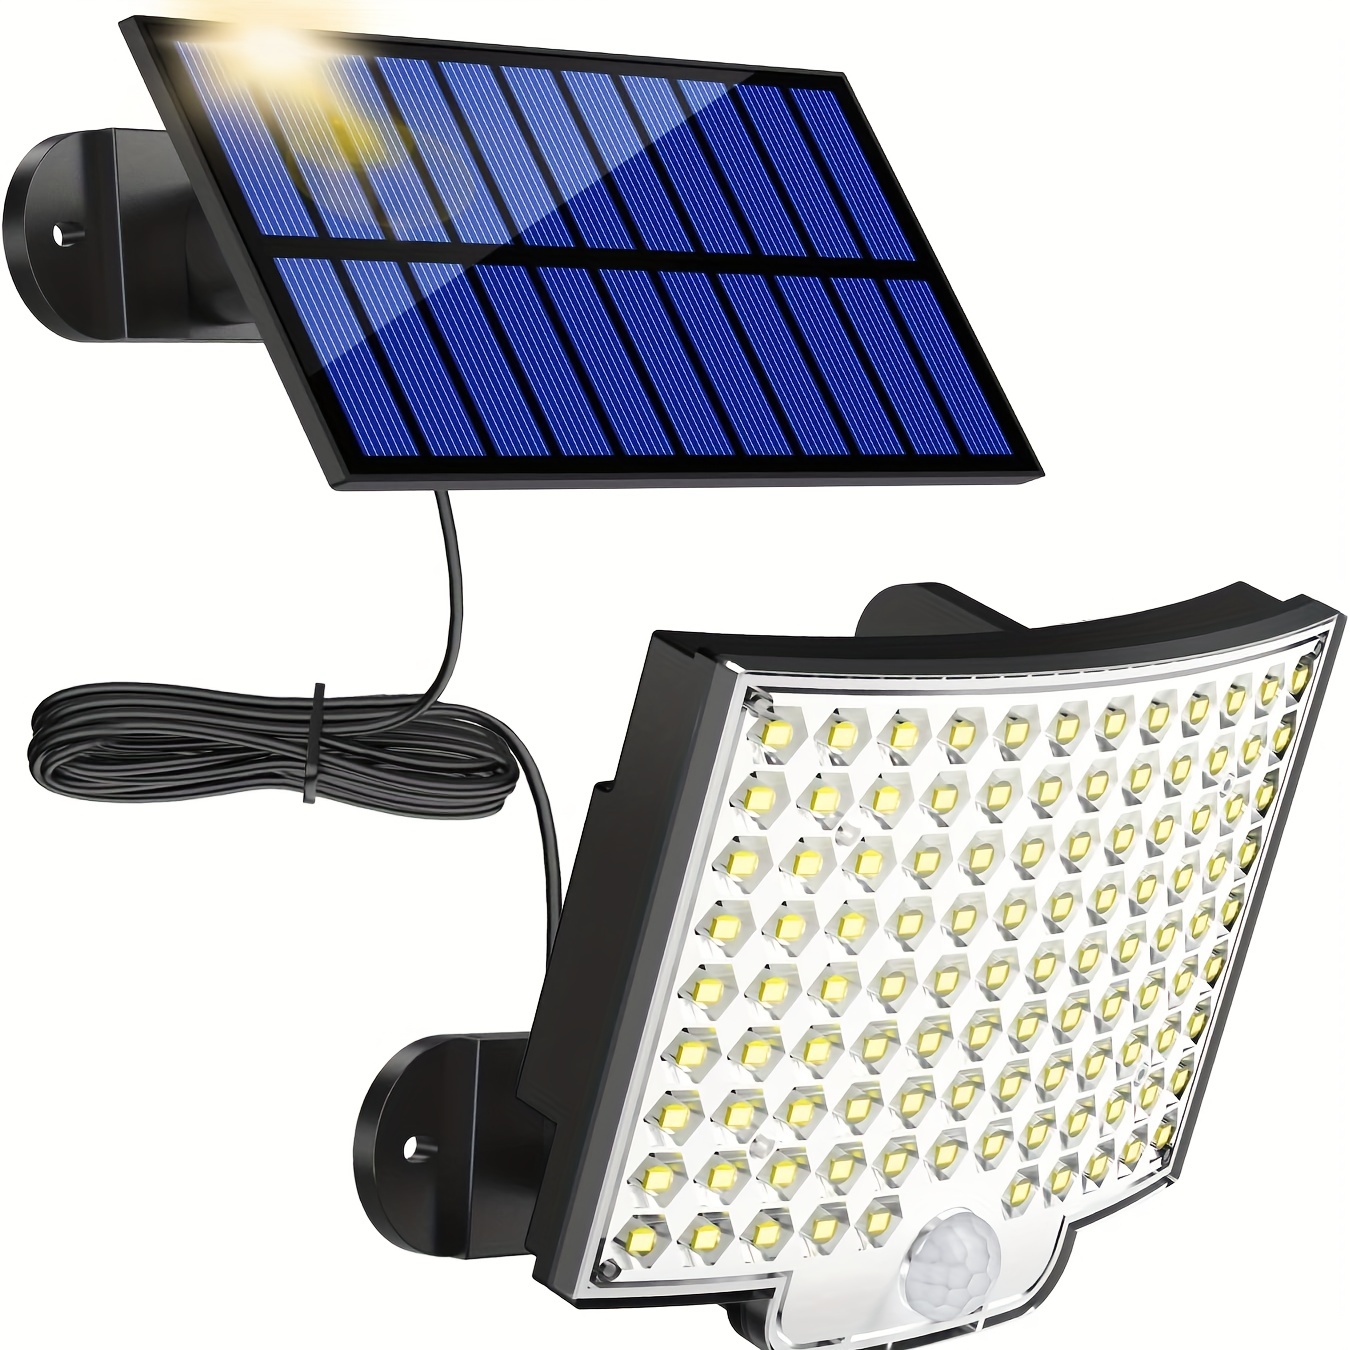 楽天市場店 LED ソーラーライト 太陽光パネル 感光式 光センサー